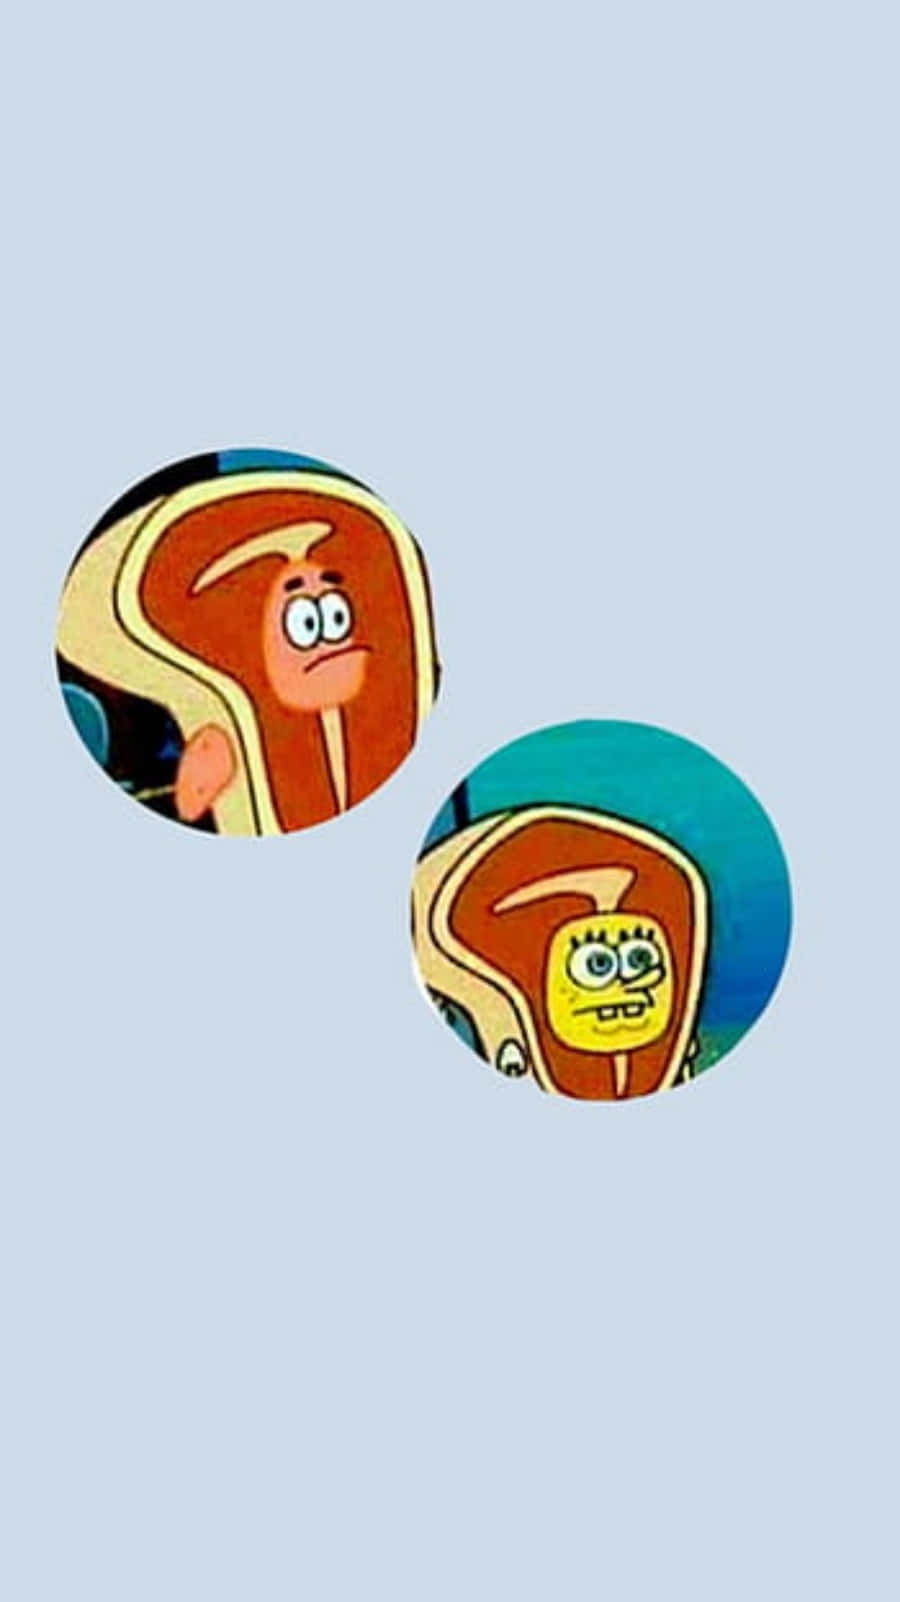 !Patrick og SpongeBob matchende profilbillede!